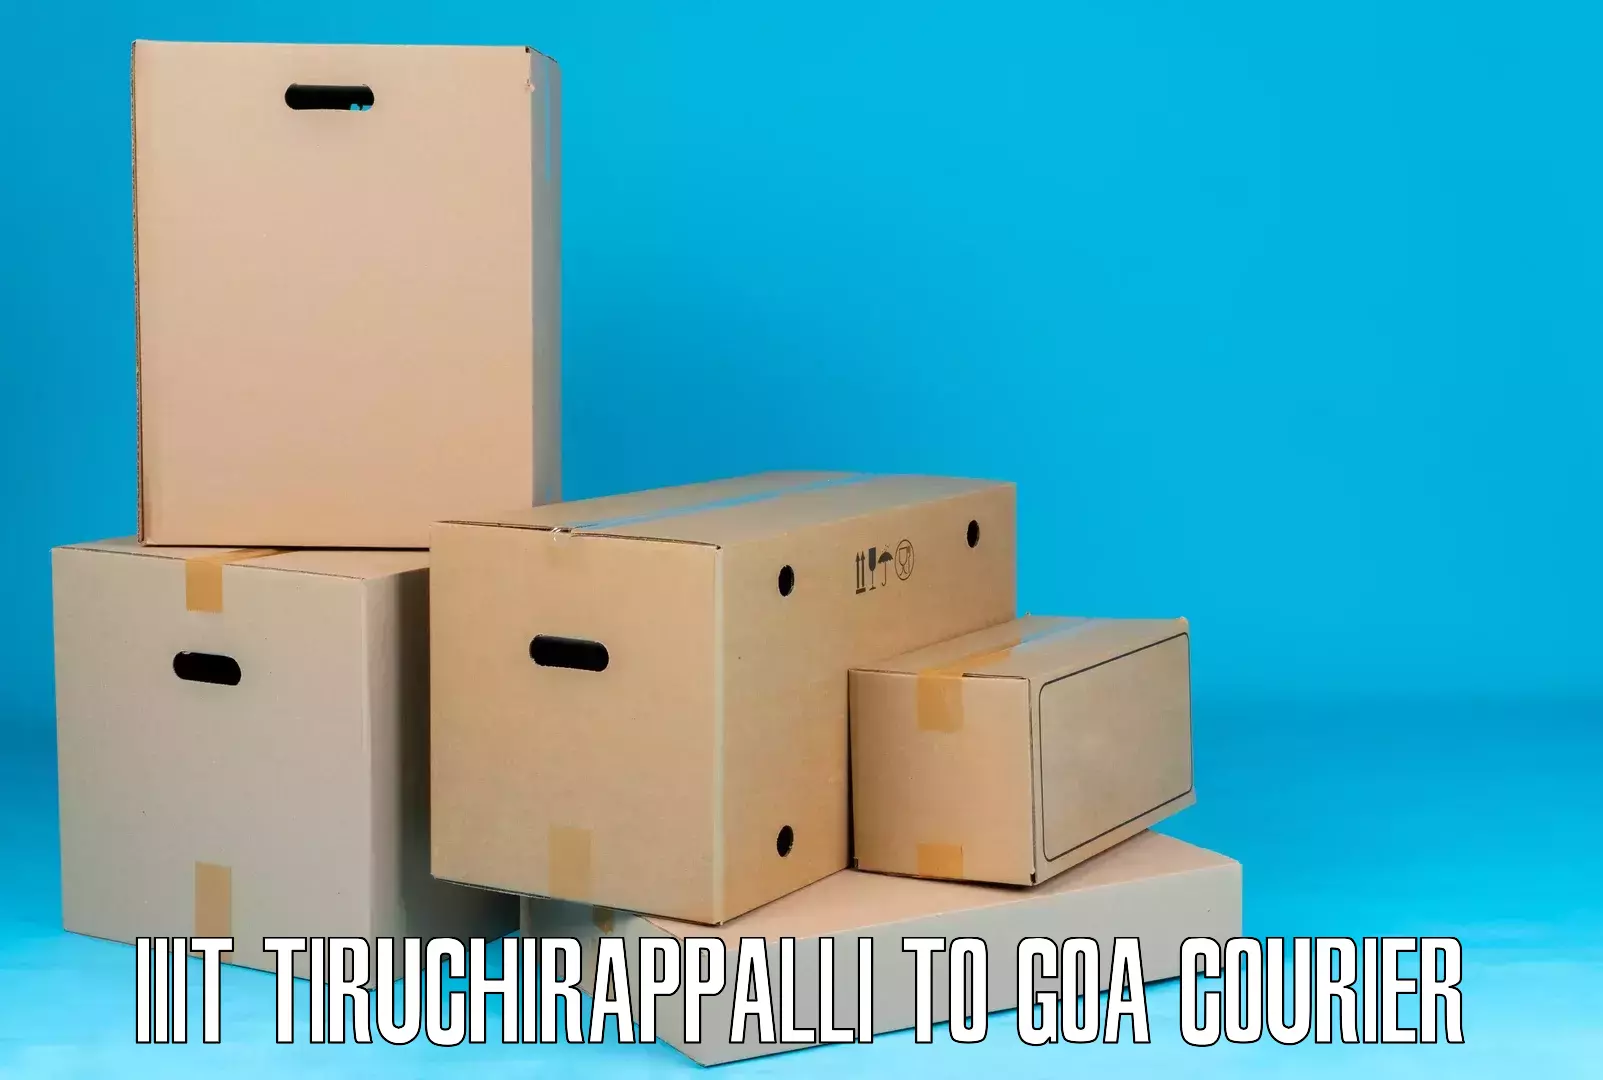 Rural area delivery IIIT Tiruchirappalli to Panaji